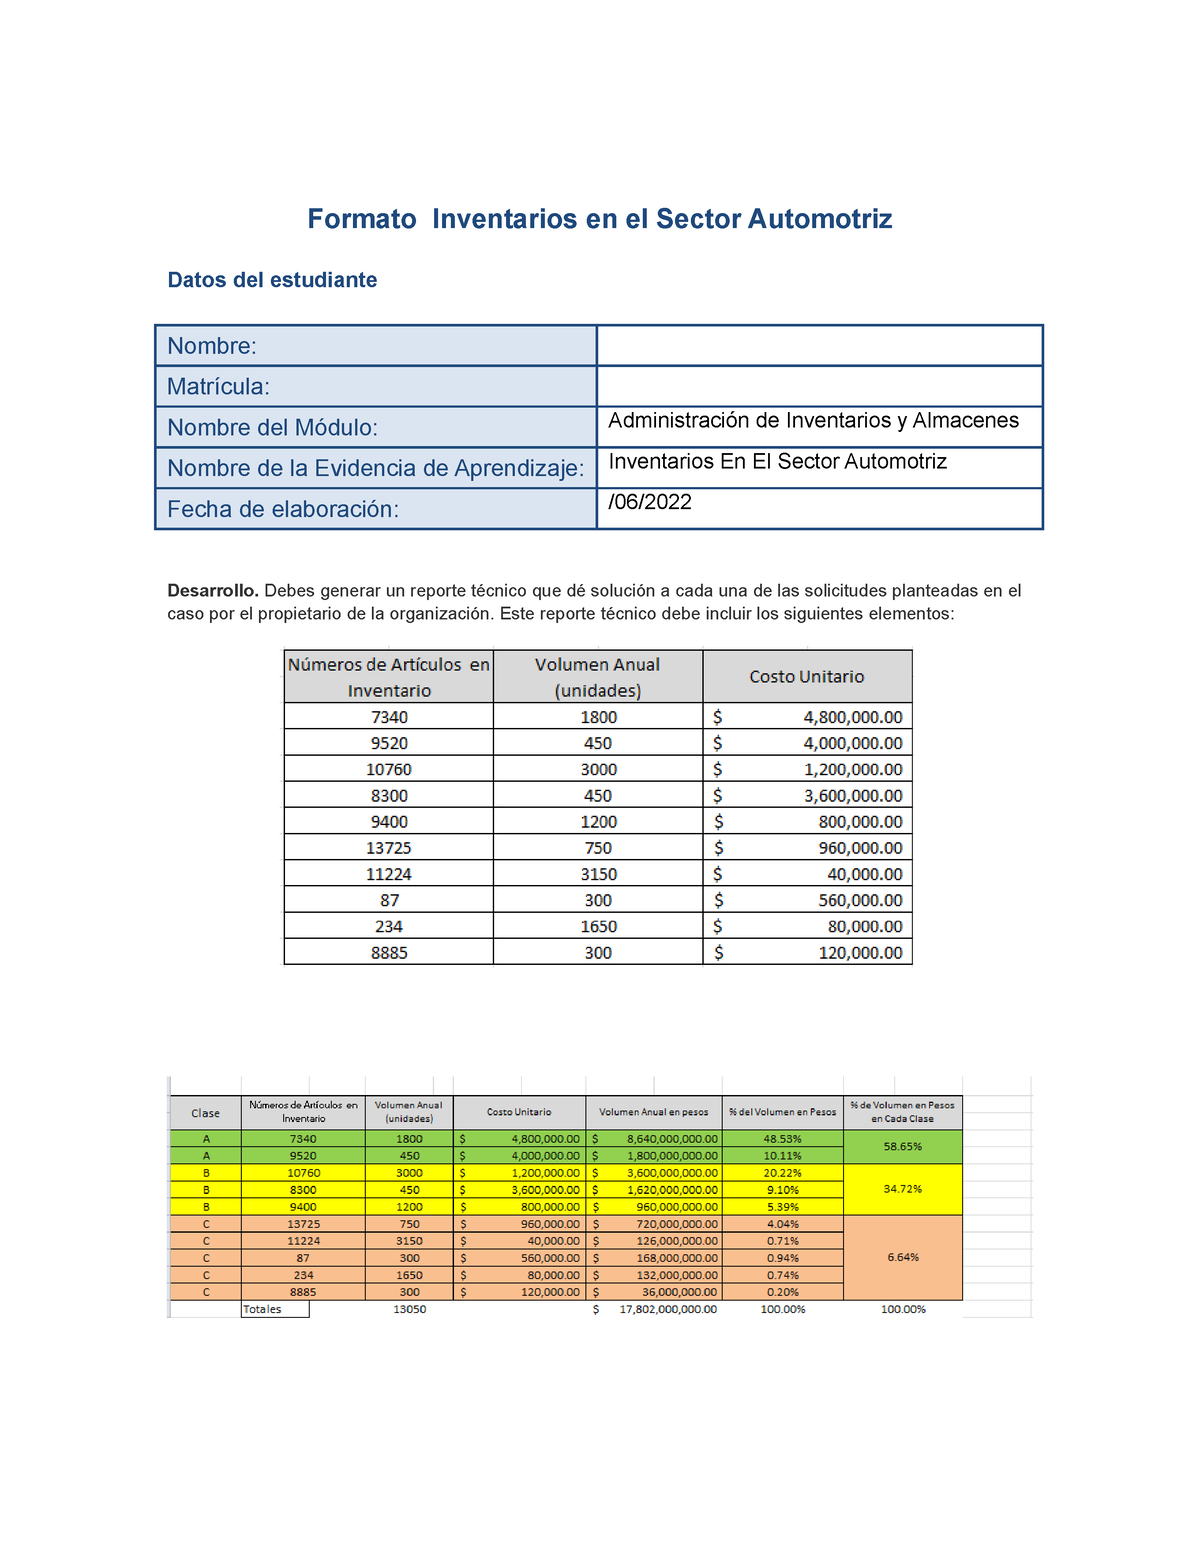 Inventario En El Sector Automotriz Ea 2 Formato Inventarios En El Sector Automotriz Datos Del 9231